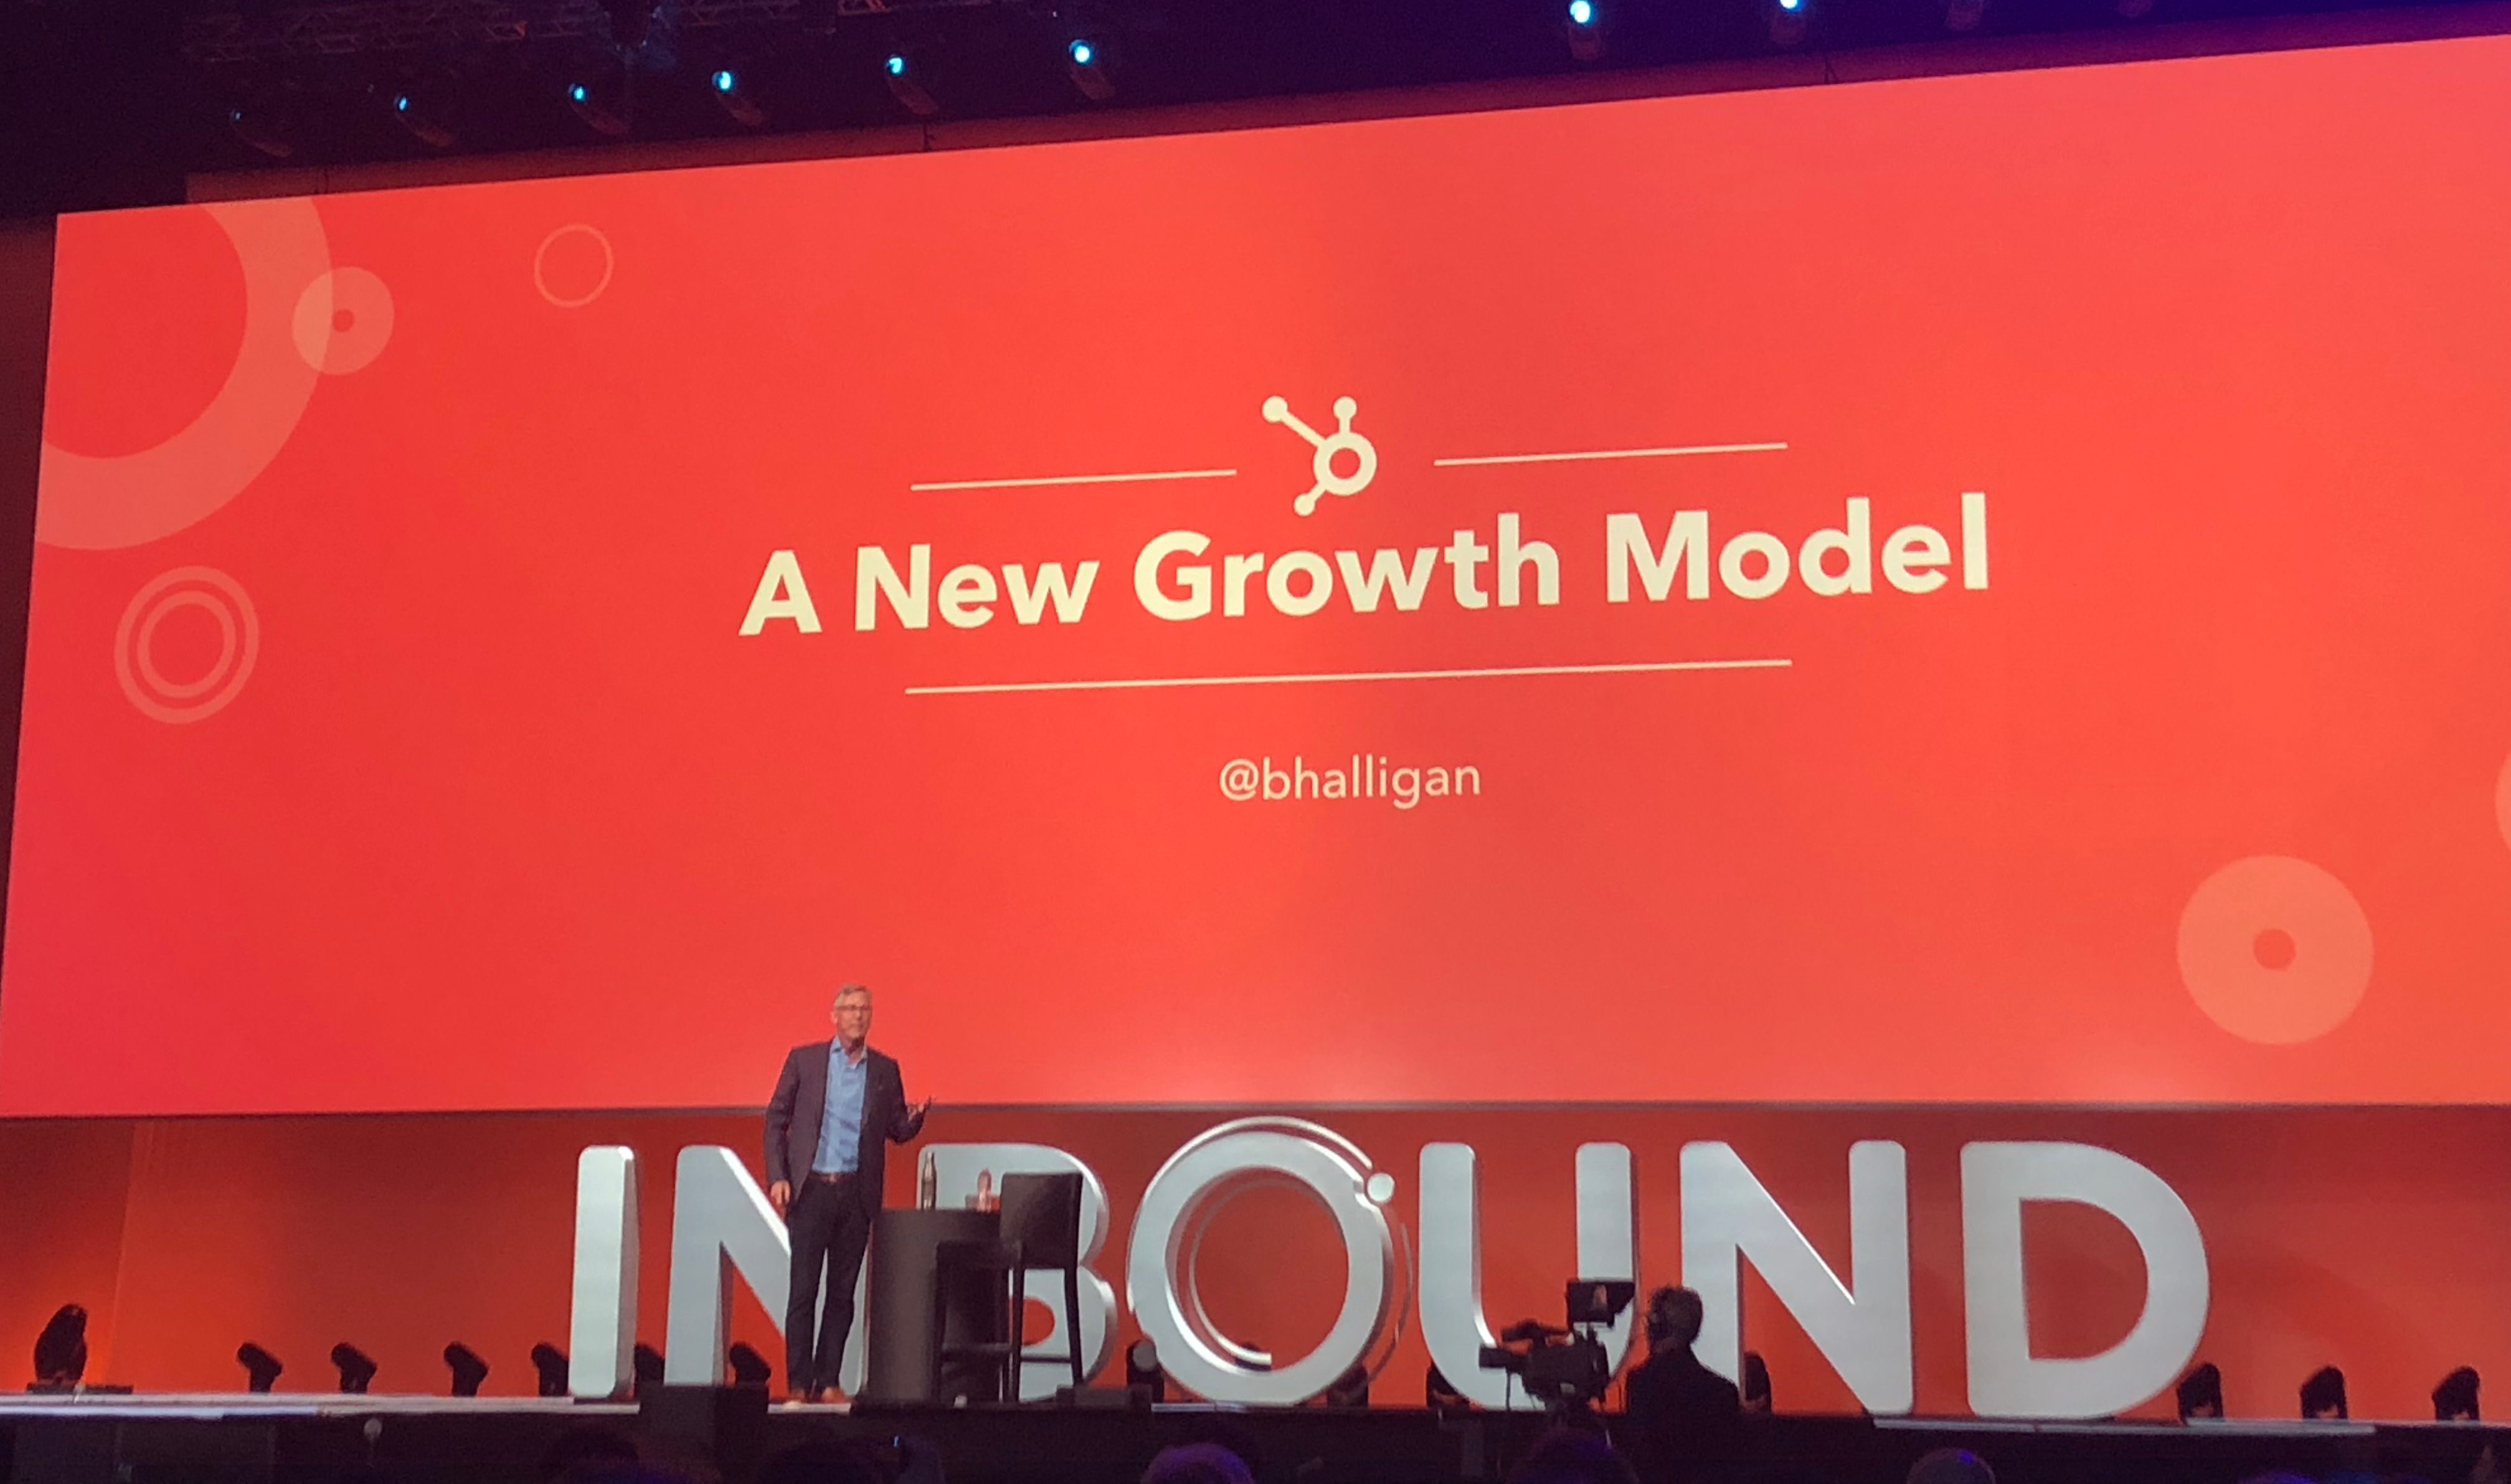 Brian Halligan om "a new growth model"